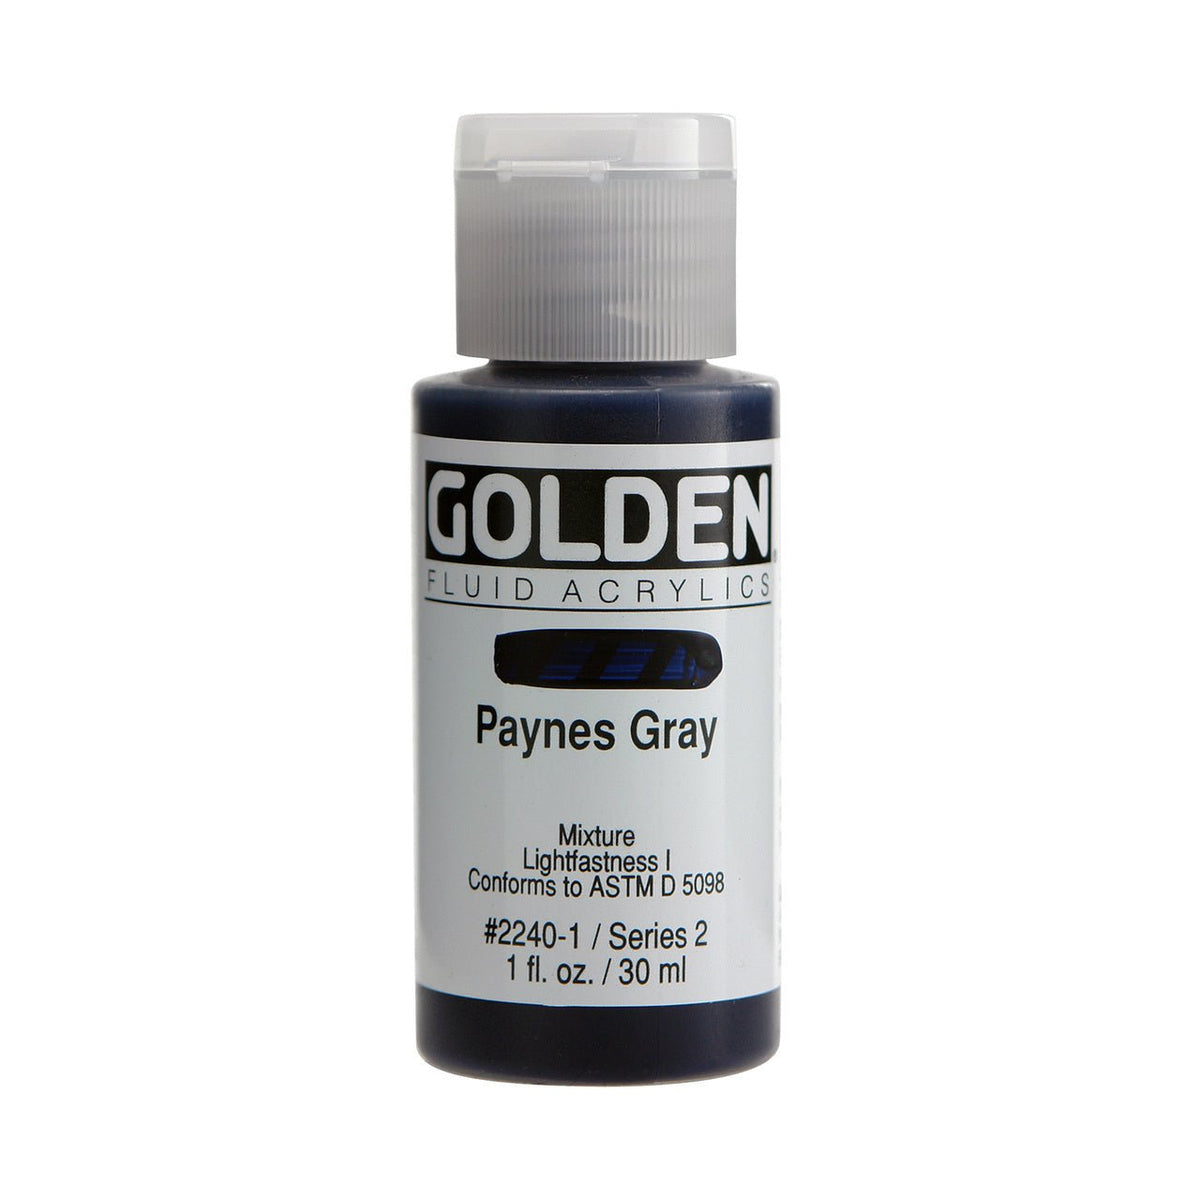 Golden Fluid Acrylic Paynes Gray 1 oz - merriartist.com